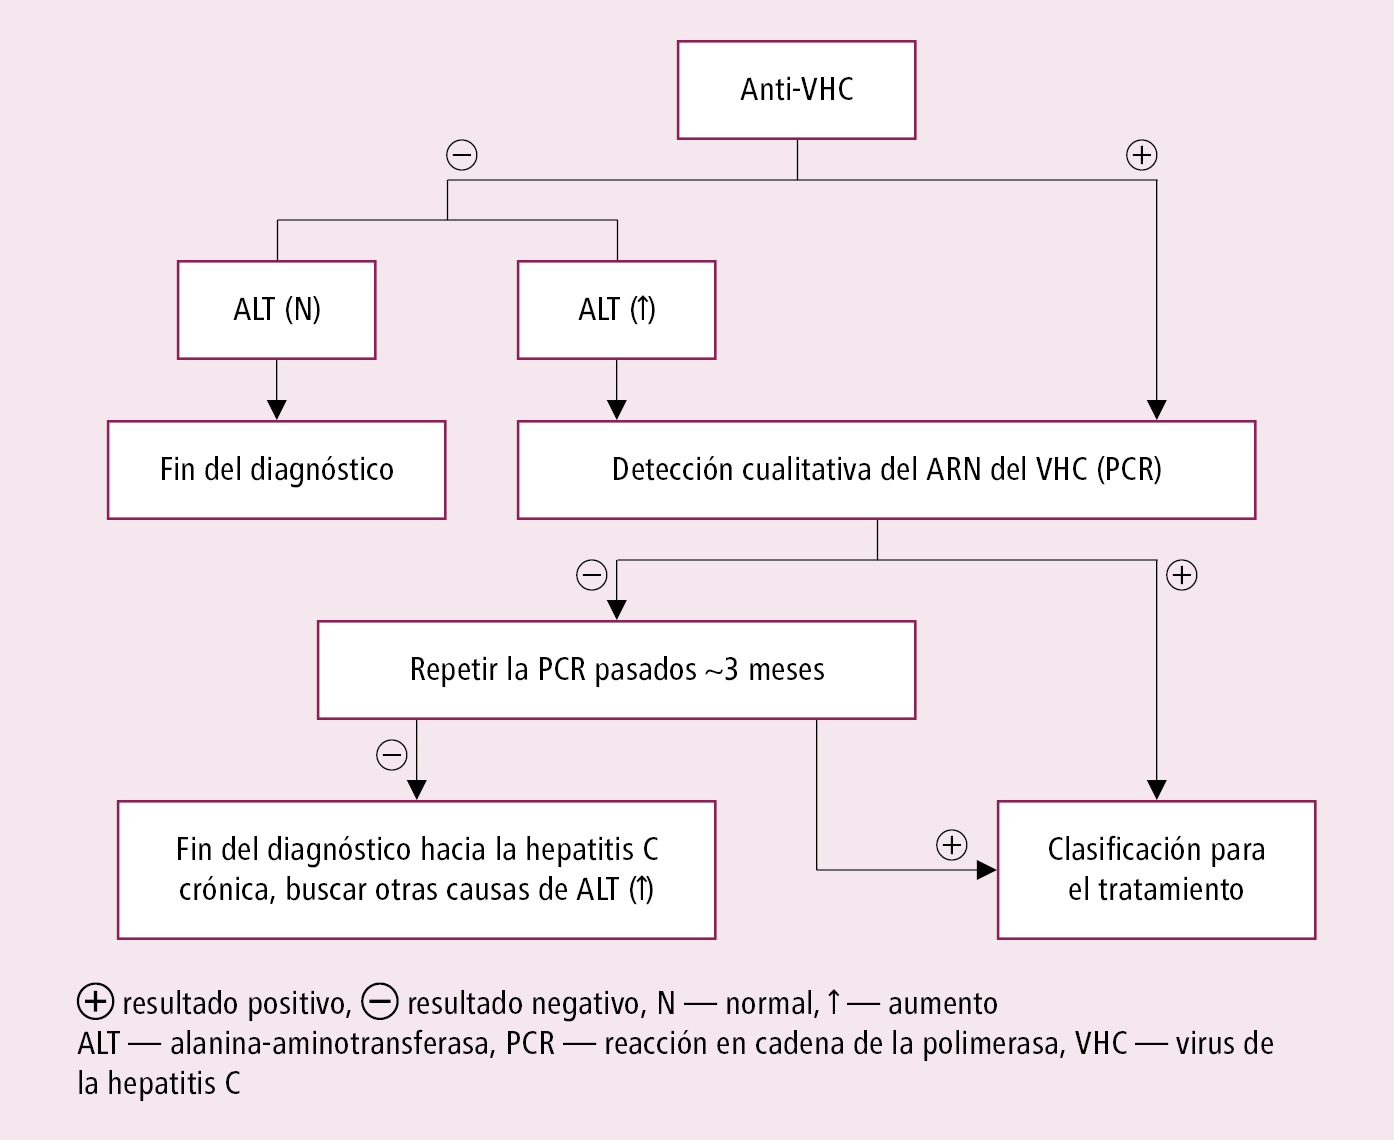    Fig. 7.3-1.  Manejo diagnóstico de la infección crónica por VHC 